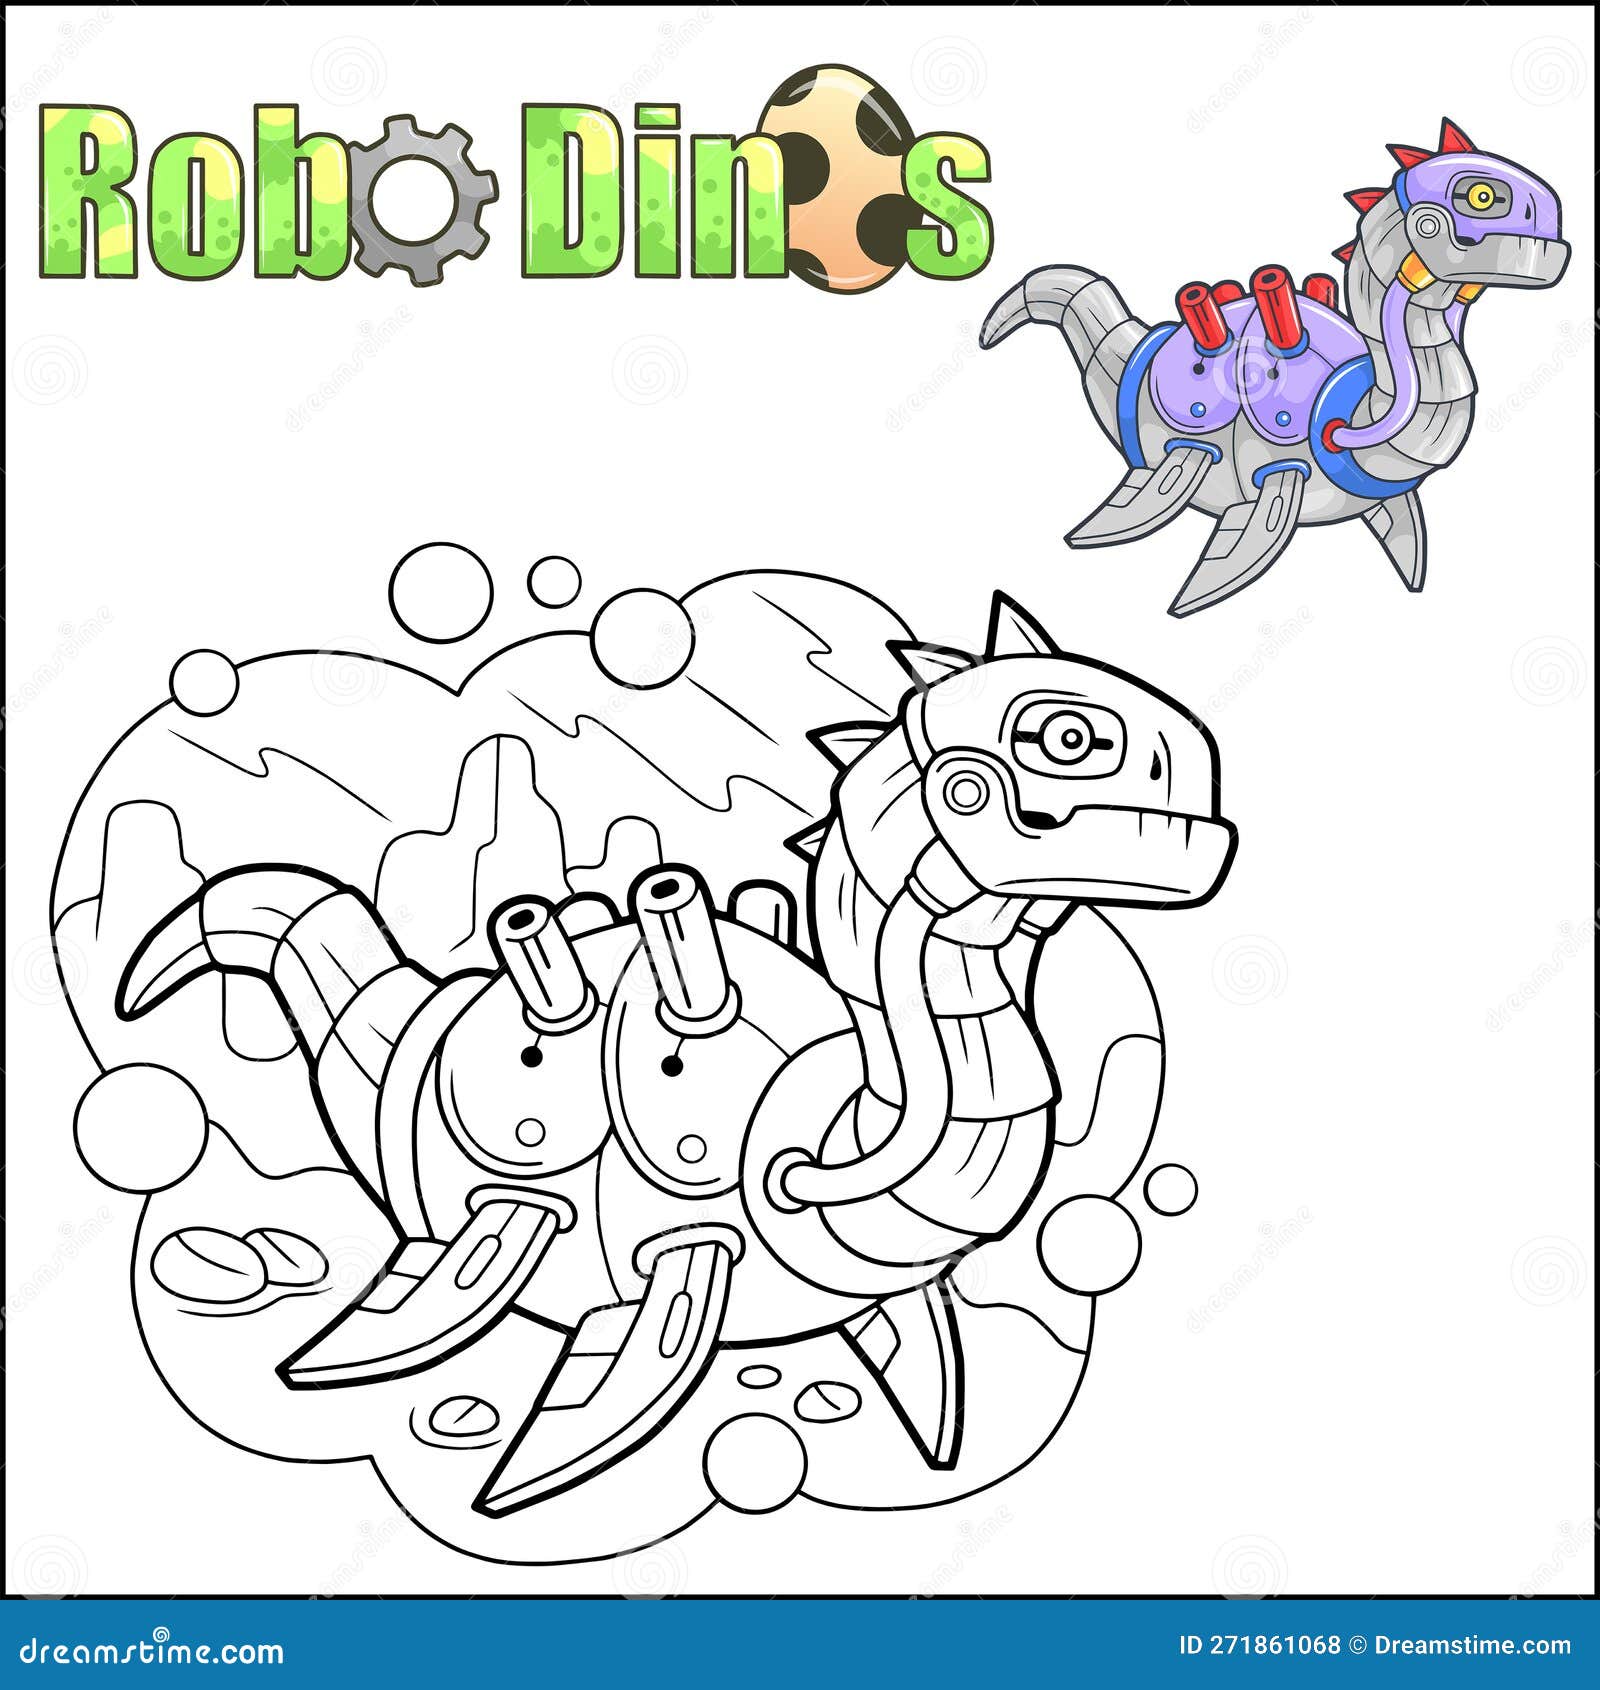 Cartoon robot dinosaur stock vector illustration of lizard